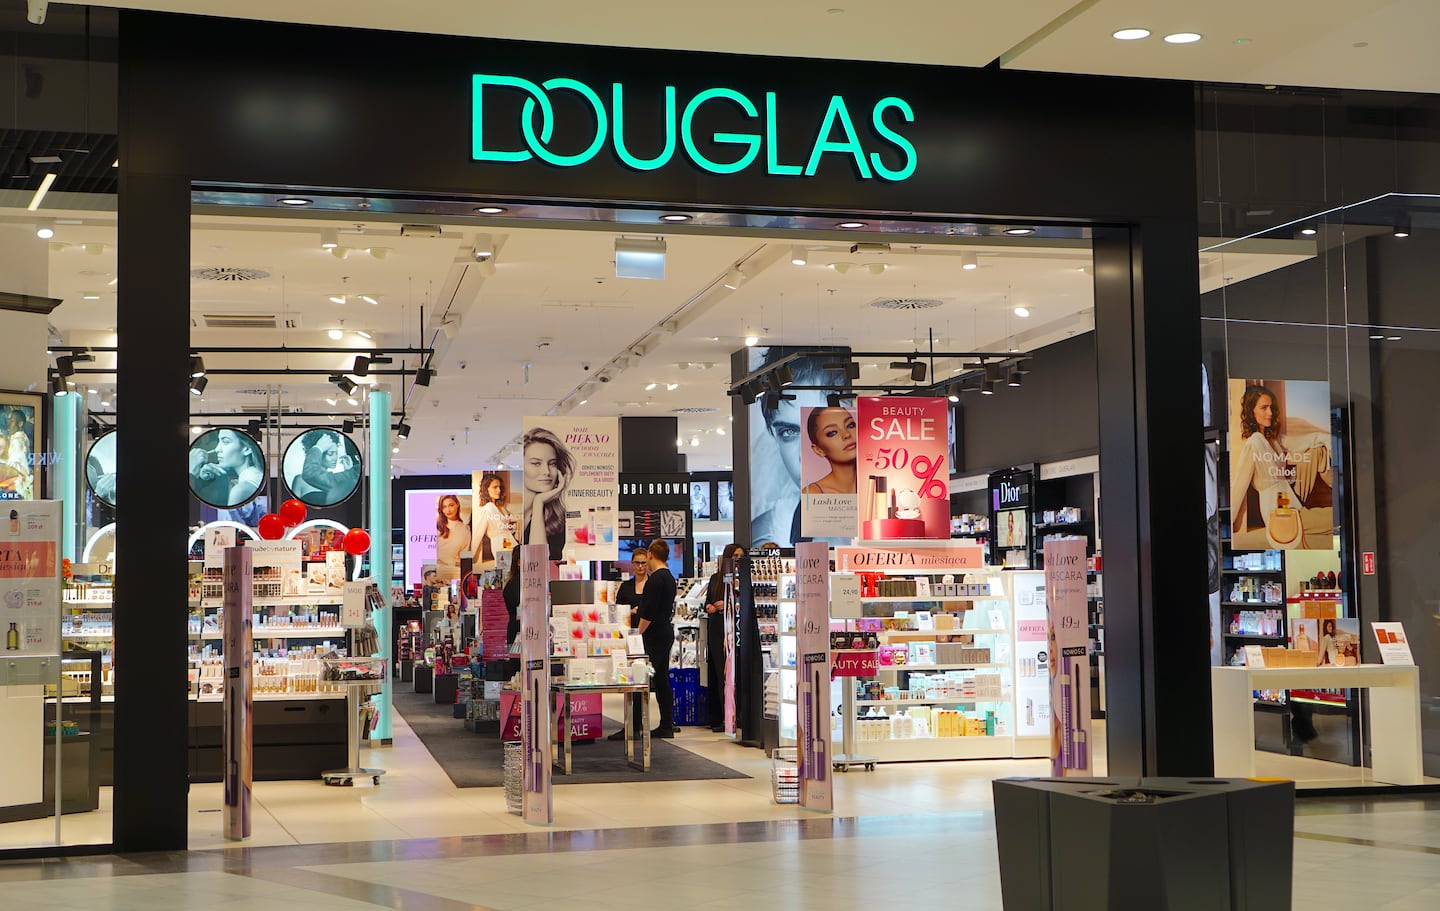 German retail beauty brand Douglas. Shutterstock.